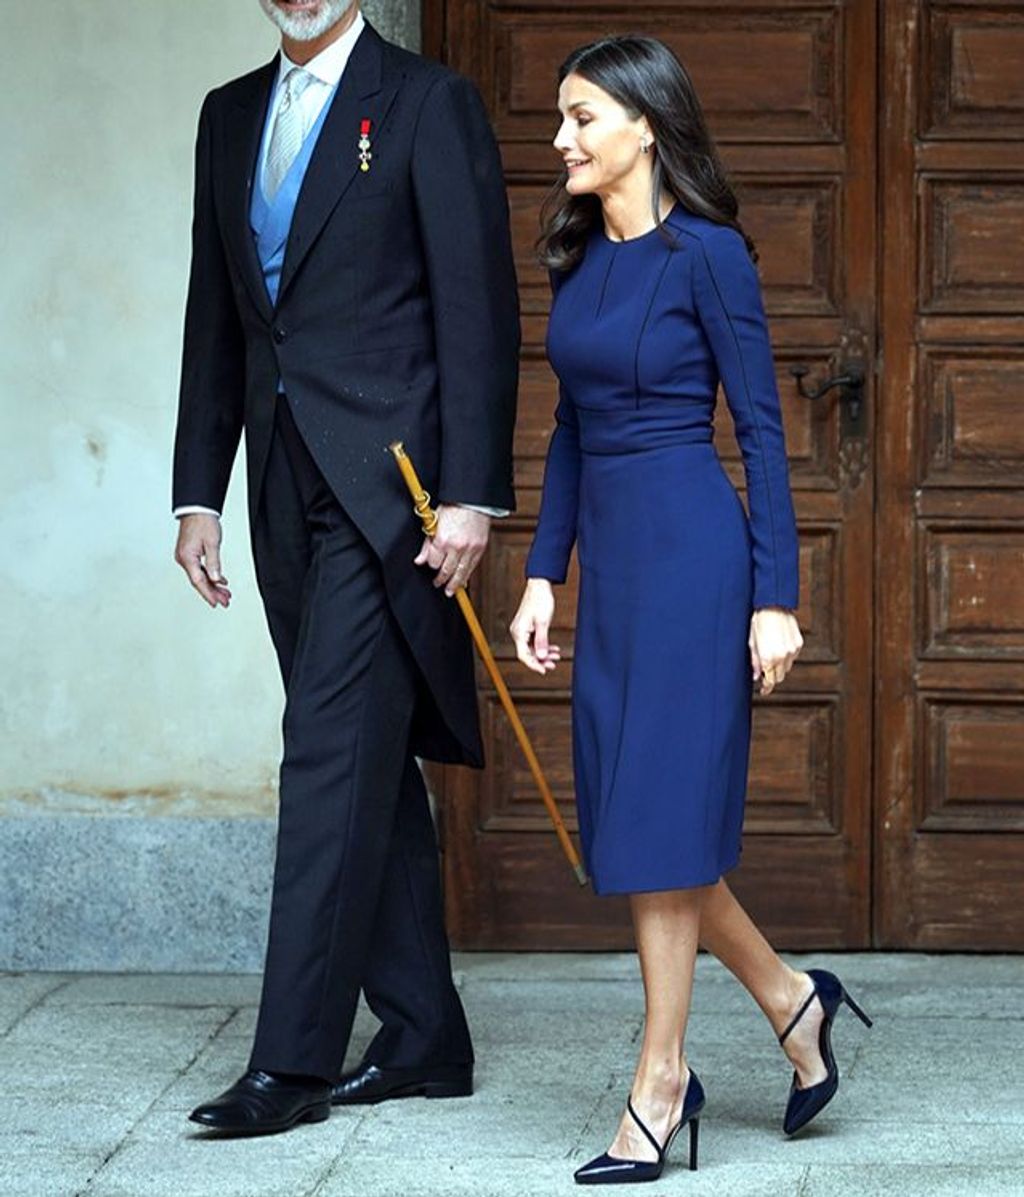 King Felipe and Queen Letizia at the Miguel de Cervantes awards ceremony in Alcala de Henares, Madrid, April 22, 2022